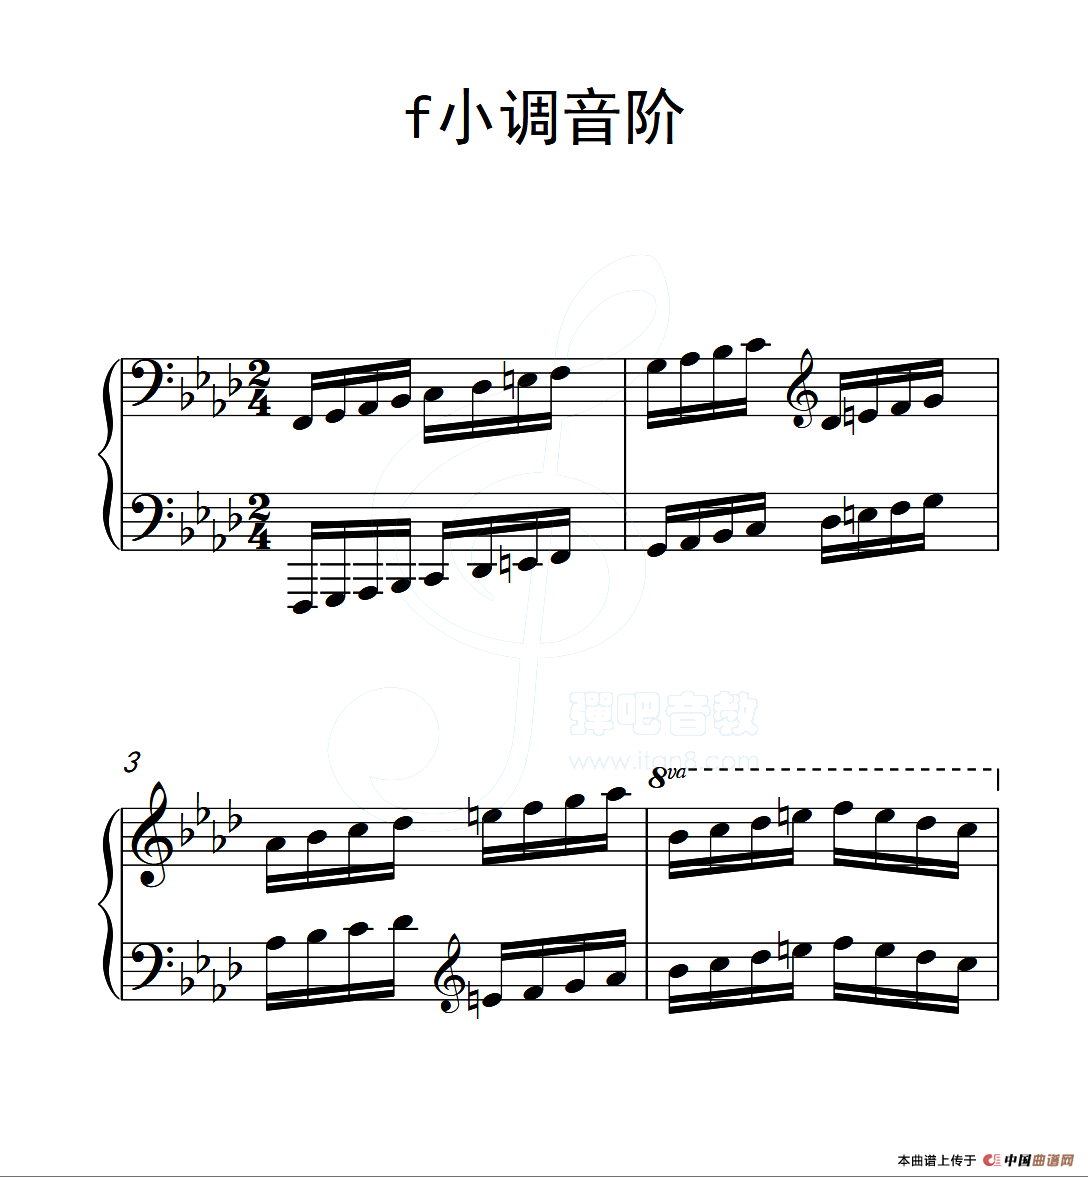 第六级f小调音阶_钢琴谱_曲谱库